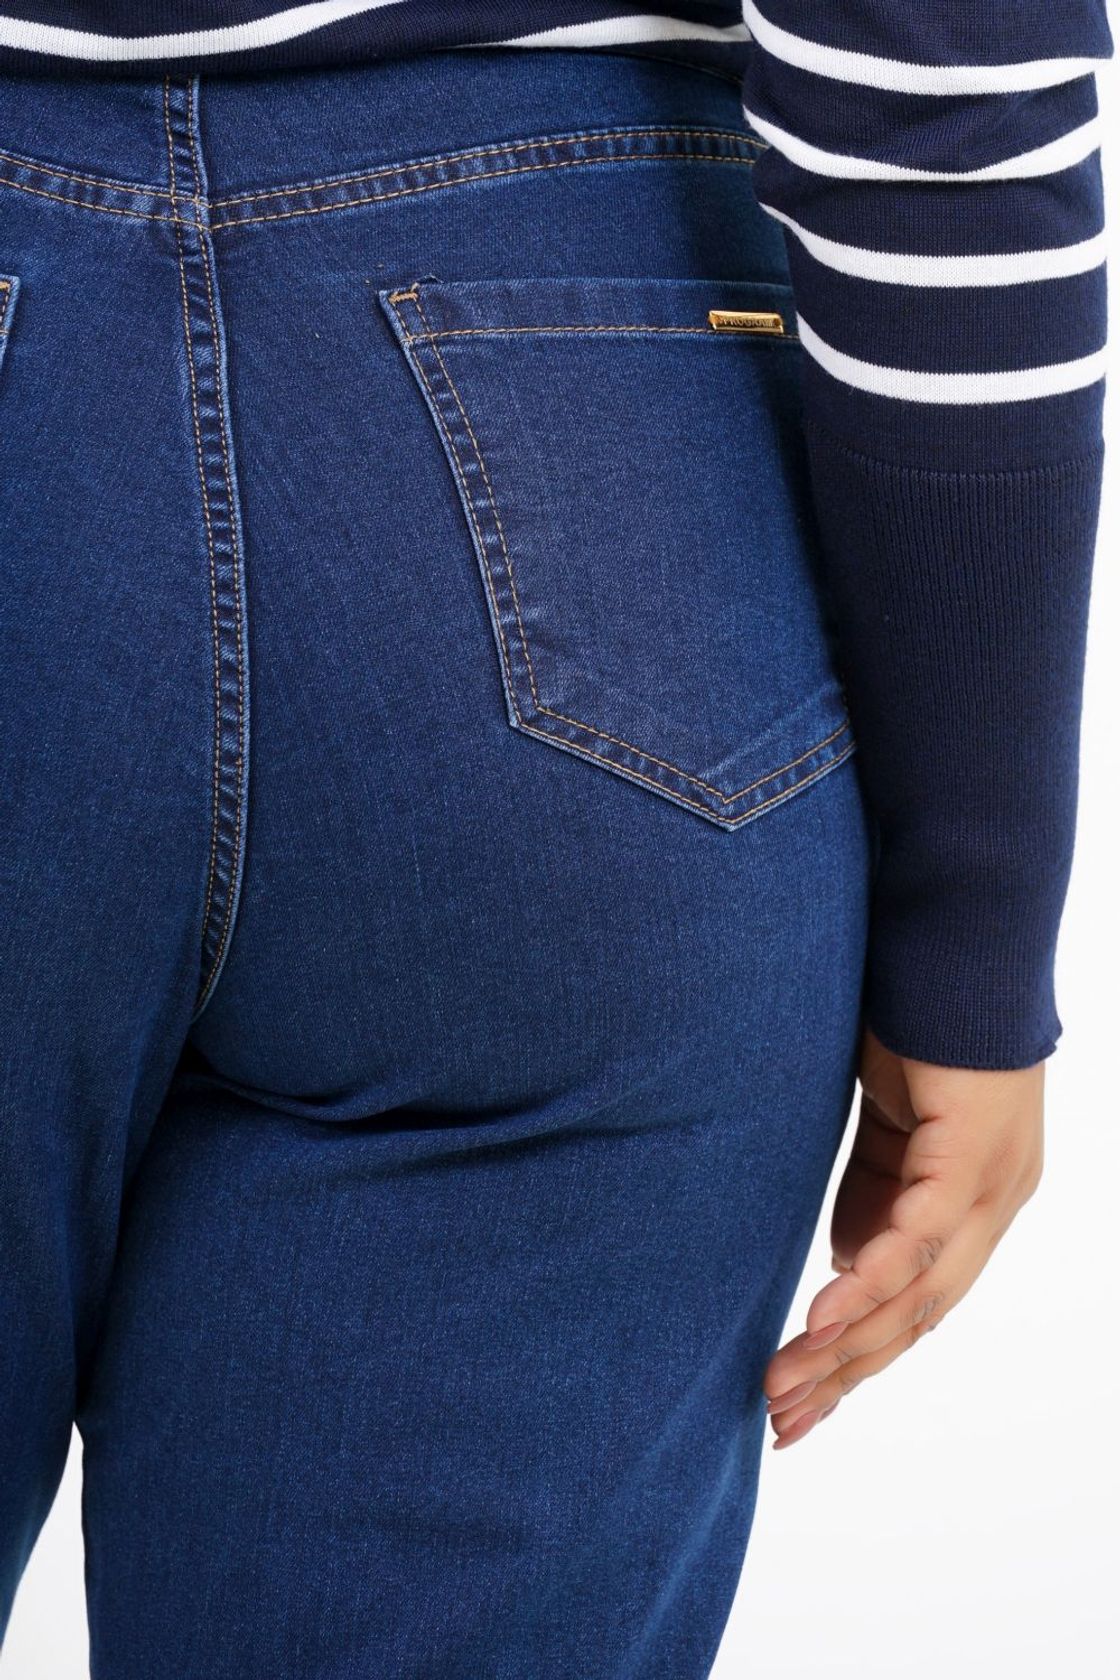 Calça Mom Plus Size Moçambique Jeans - Program Moda